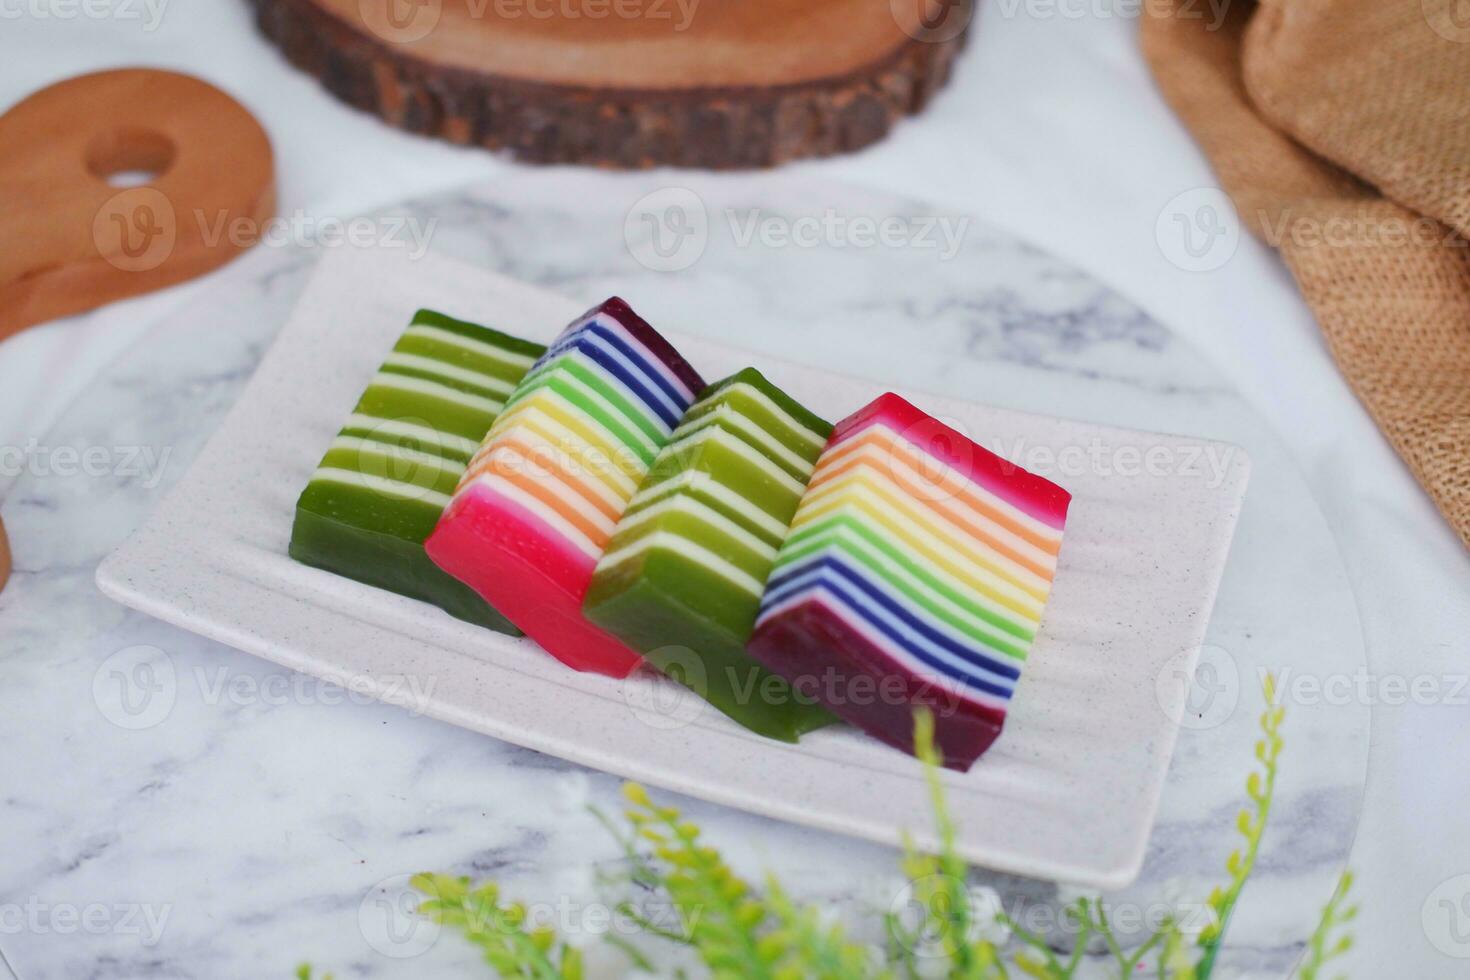 kue Lapis oder oder Regenbogen klebrig Schicht Kuchen, indonesisch traditionell Dessert foto